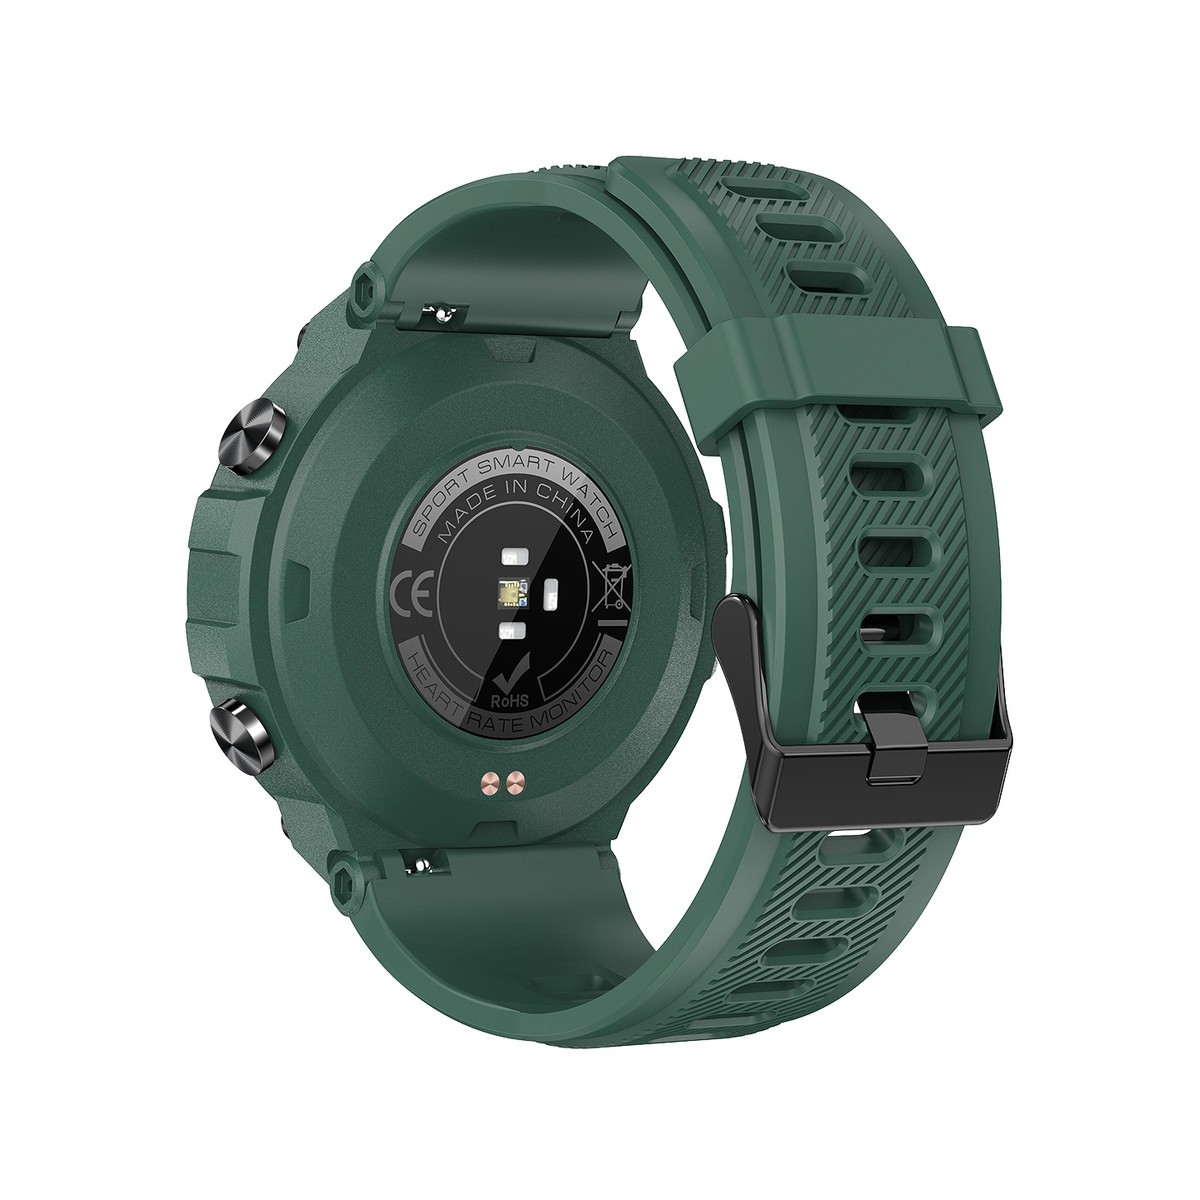 Montre SMARTY 2.0 pull up mixte connecté métal noir bracelet silicone vert - vue 3